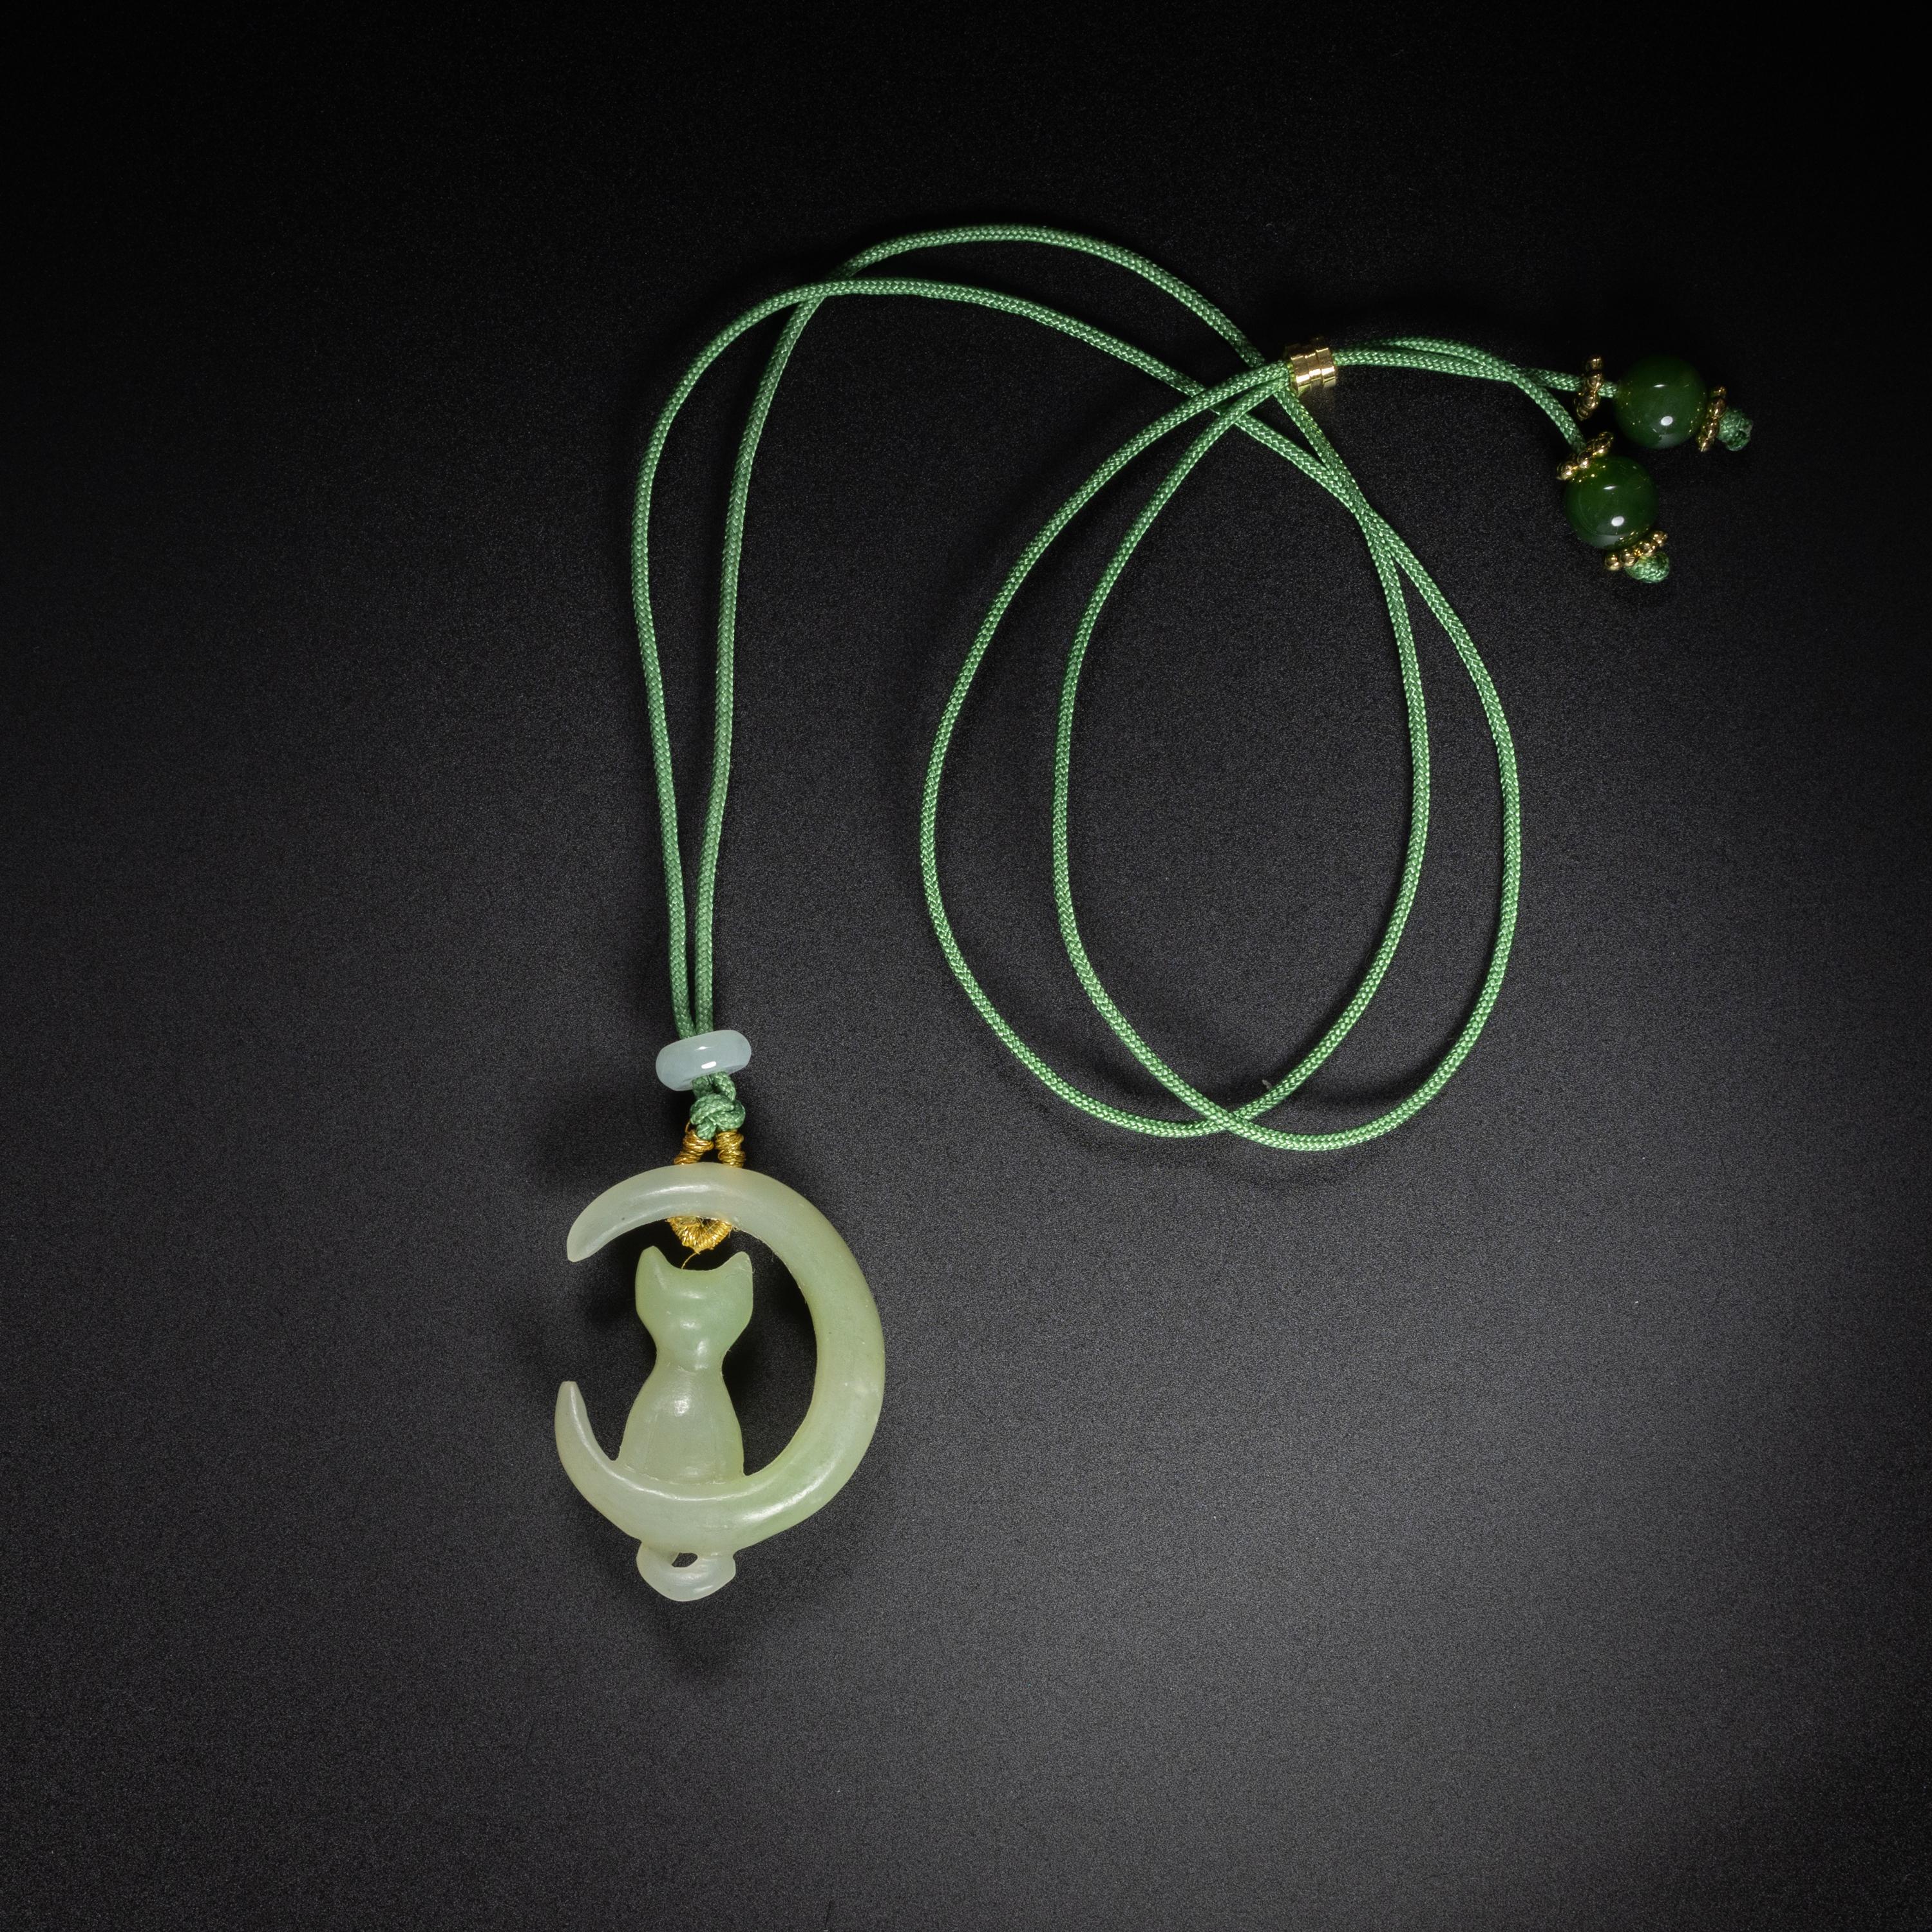 Sculpté à la main dans du jade néphrite naturel et non traité, ce charmant chat est perché dans un croissant de lune. La sculpture est sensible et expressive ; le pendentif est unique en son genre. Un solide cordon en nylon noir transforme la